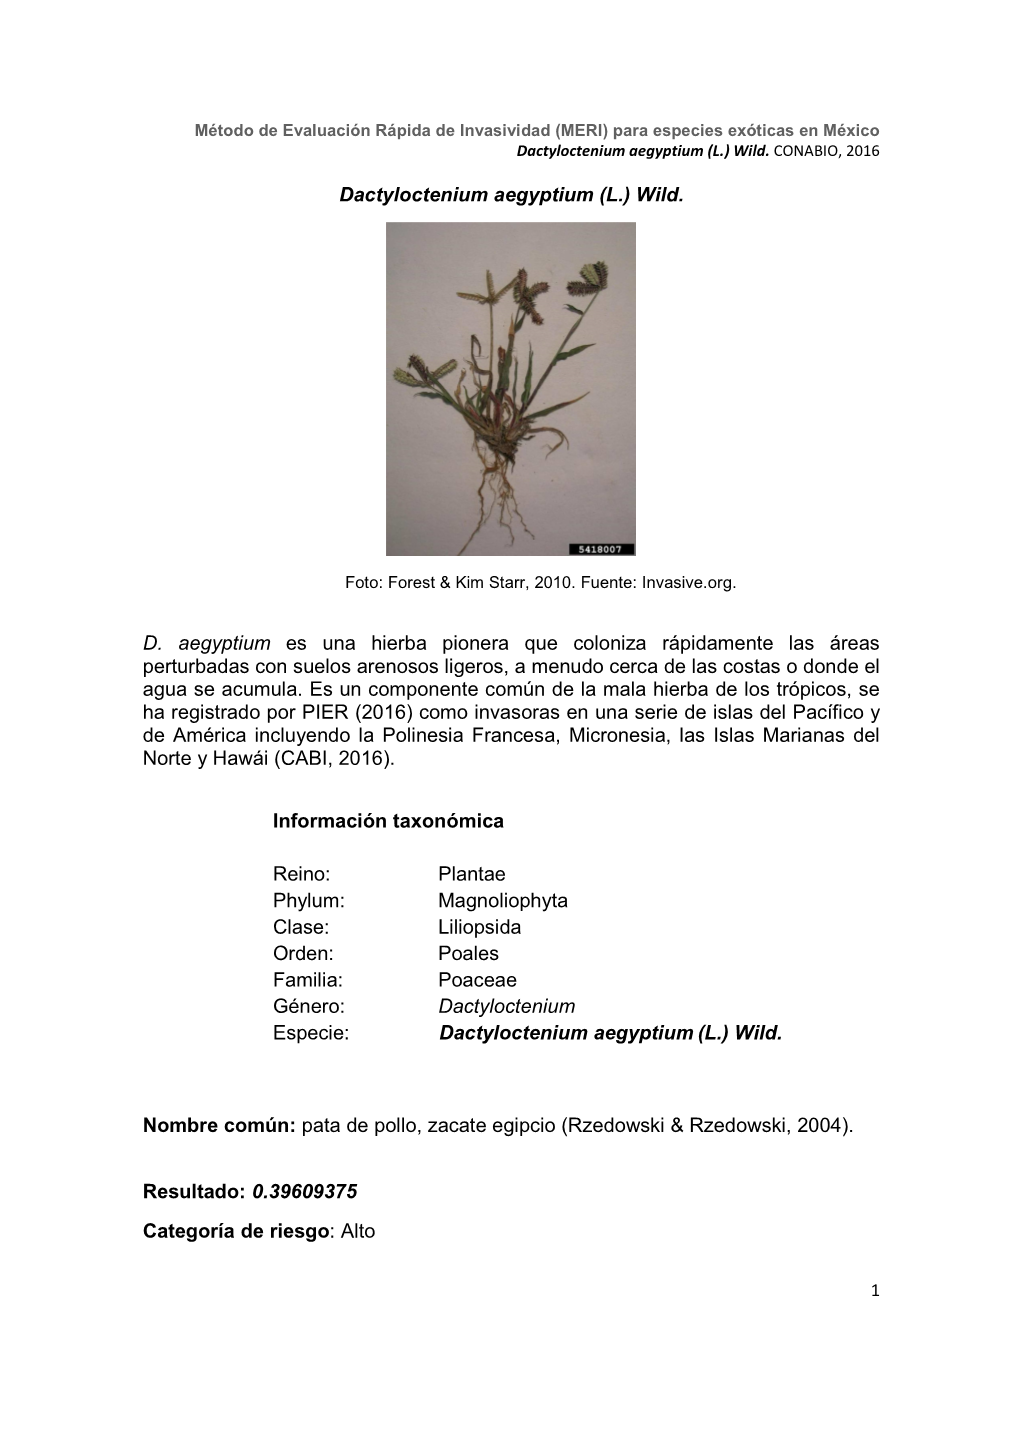 Dactyloctenium Aegyptium (L.) Wild